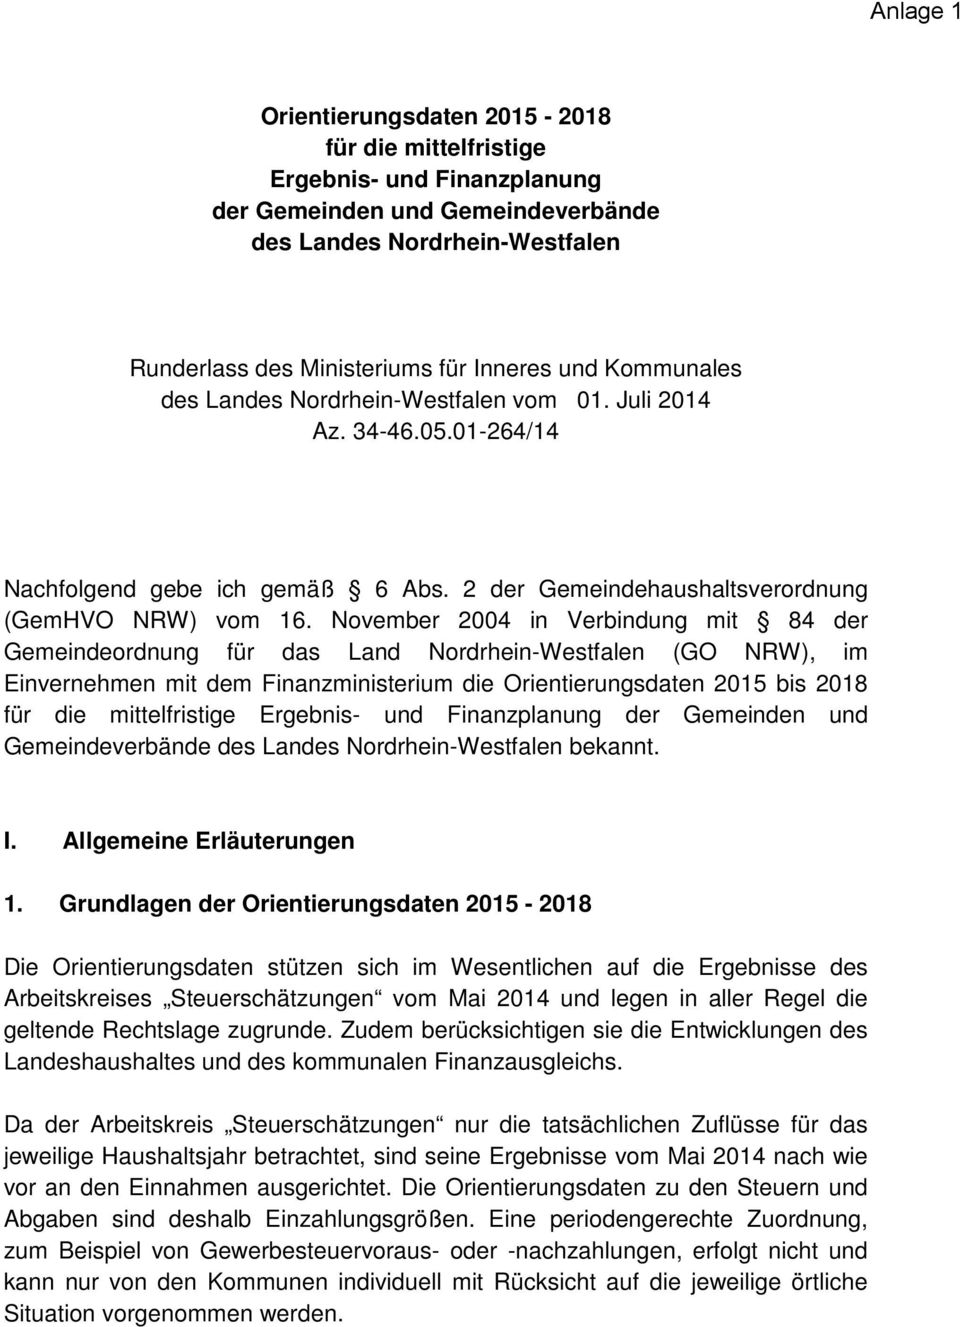 November 2004 in Verbindung mit 84 der Gemeindeordnung für das Land Nordrhein-Westfalen (GO NRW), im Einvernehmen mit dem Finanzministerium die Orientierungsdaten 2015 bis 2018 für die mittelfristige